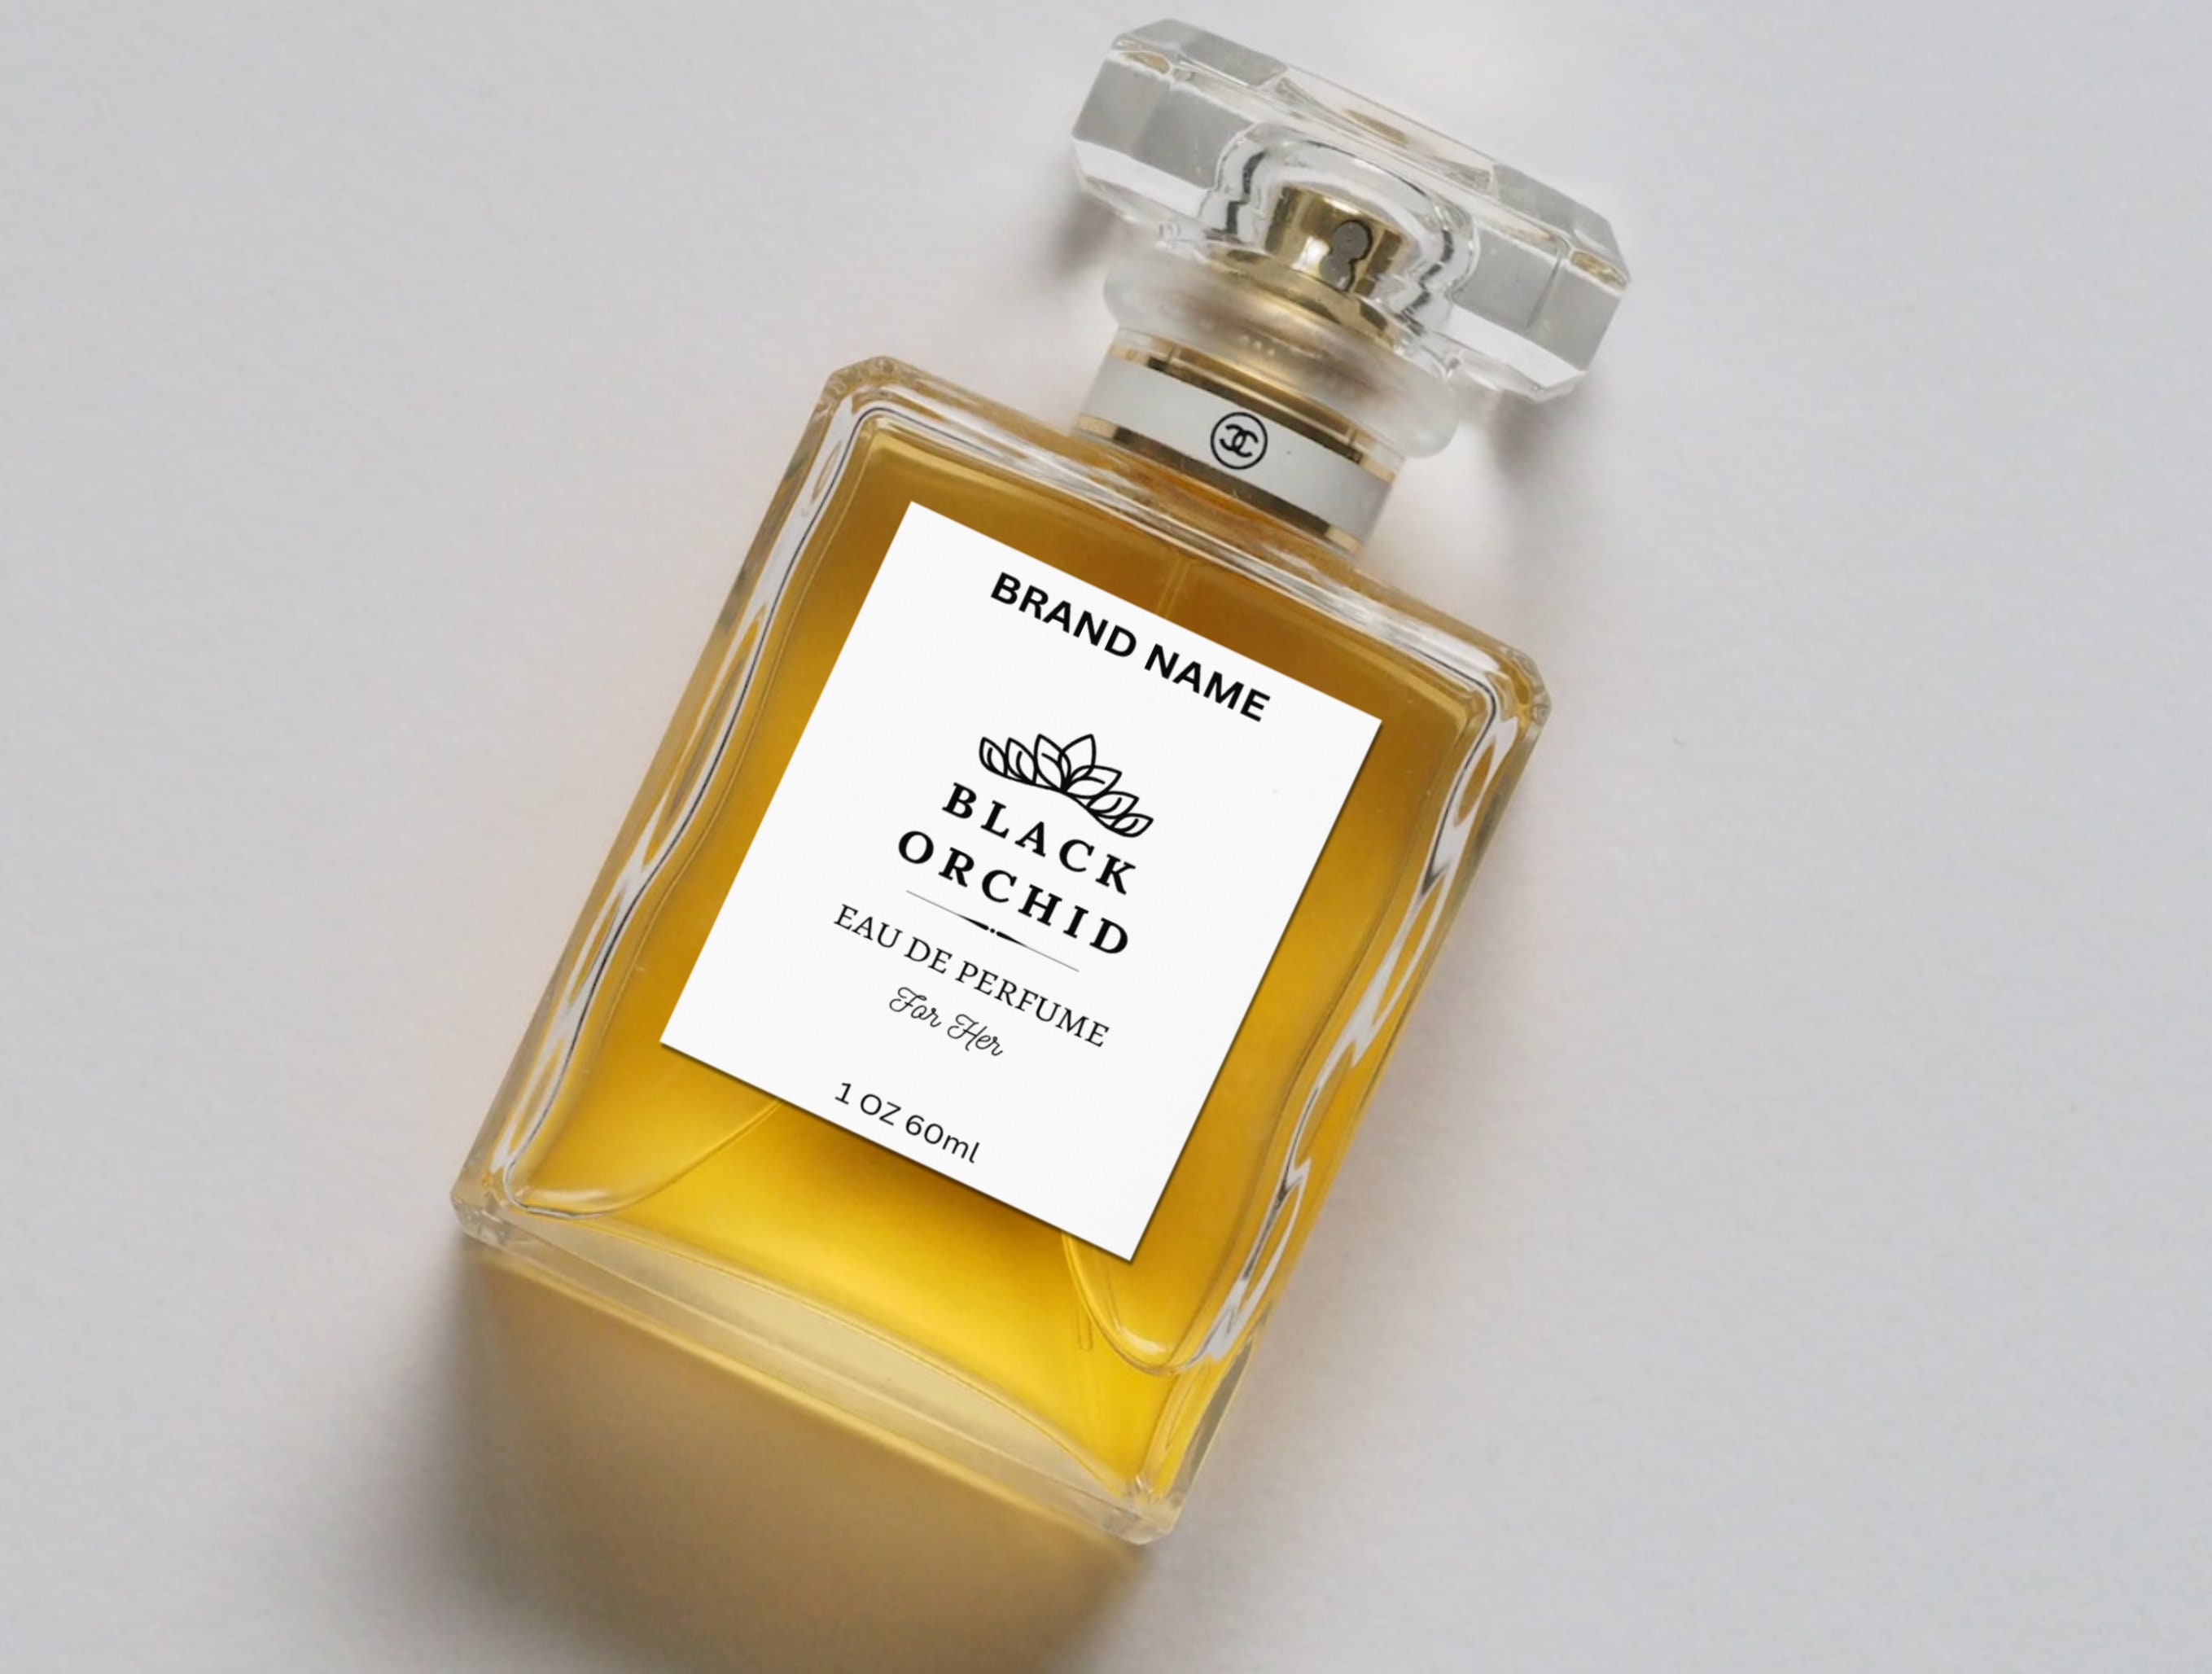 Custom Perfume Bottle Label Template.editable Canva Design for 